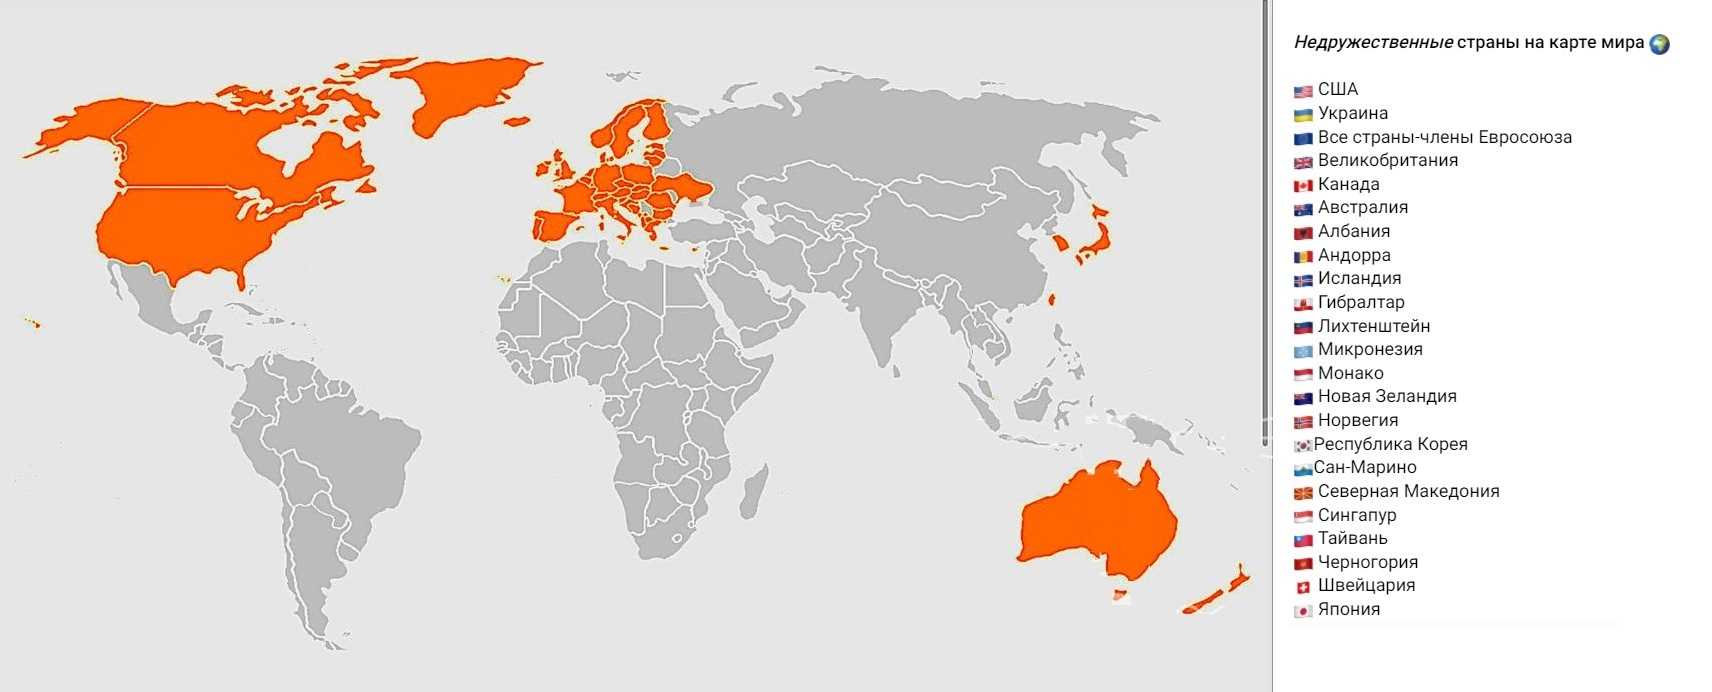 10 стран, которых больше нет: обзор государств, которых уже не существует